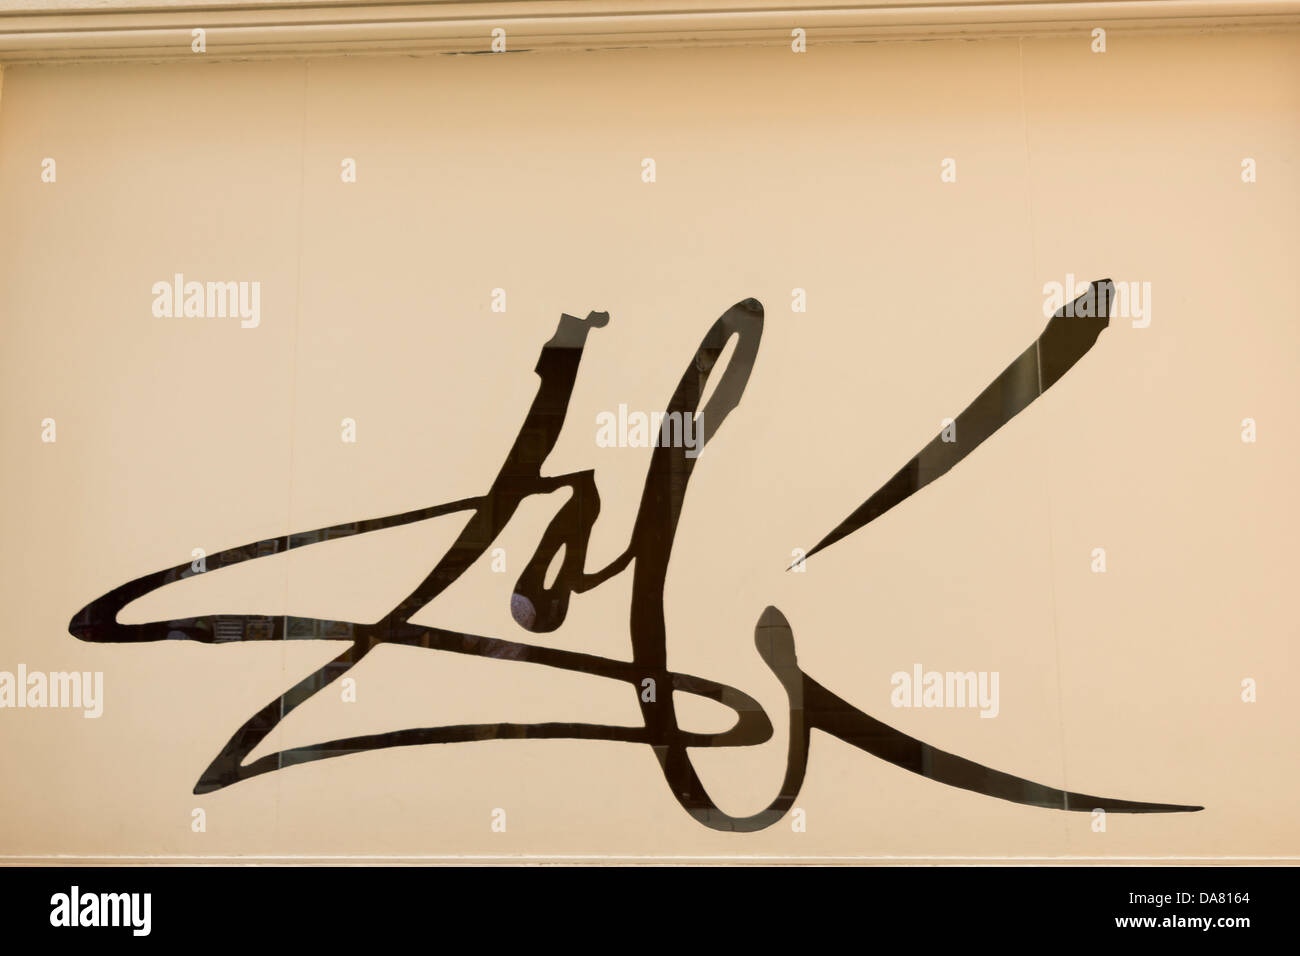 La signature de Dali en face de son musée à Figueres, Espagne Banque D'Images